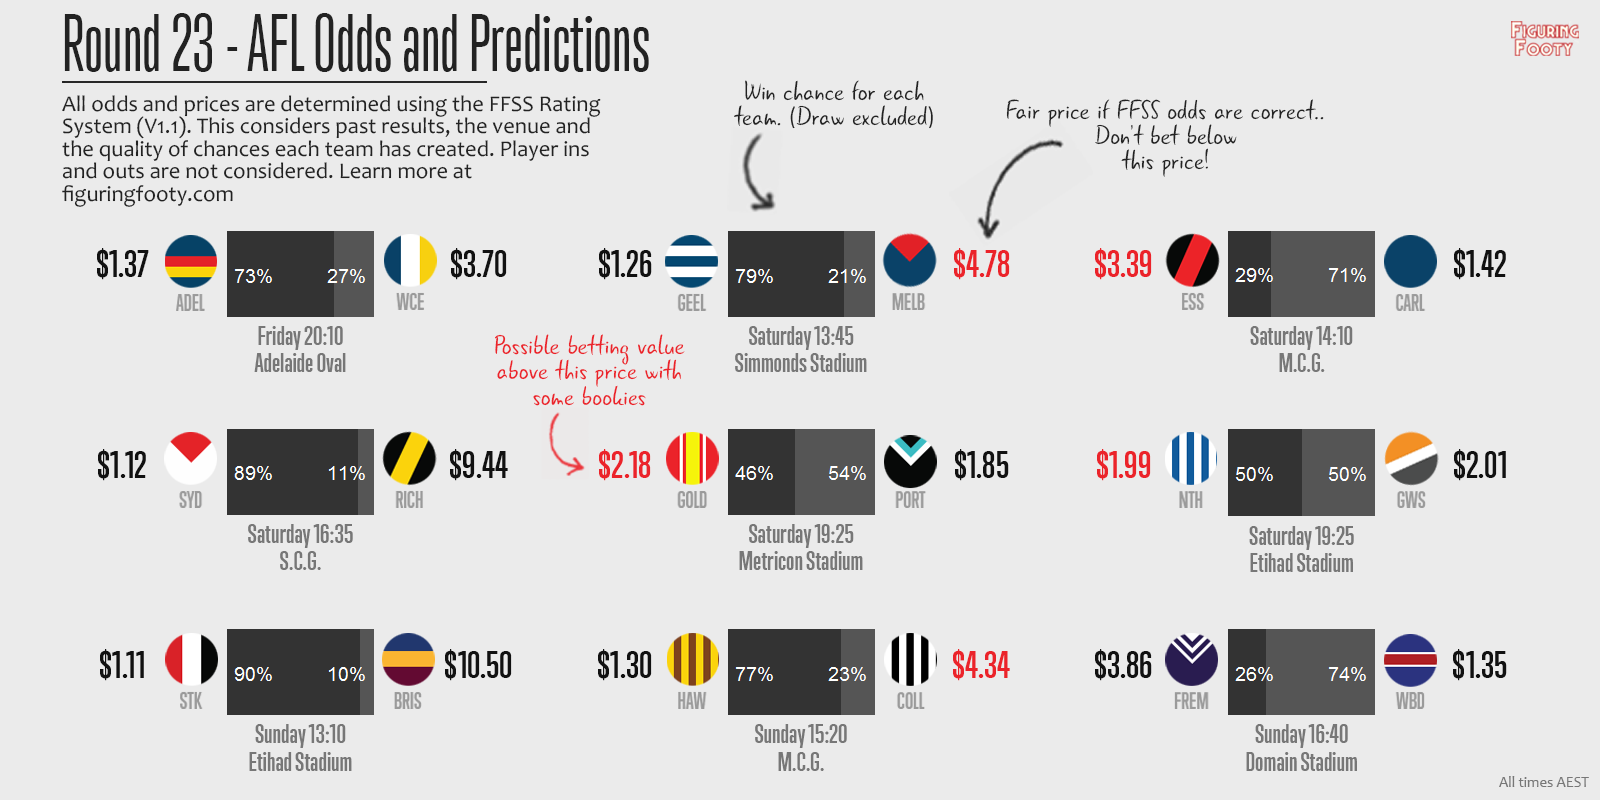 FFSS Round 23 Predictions